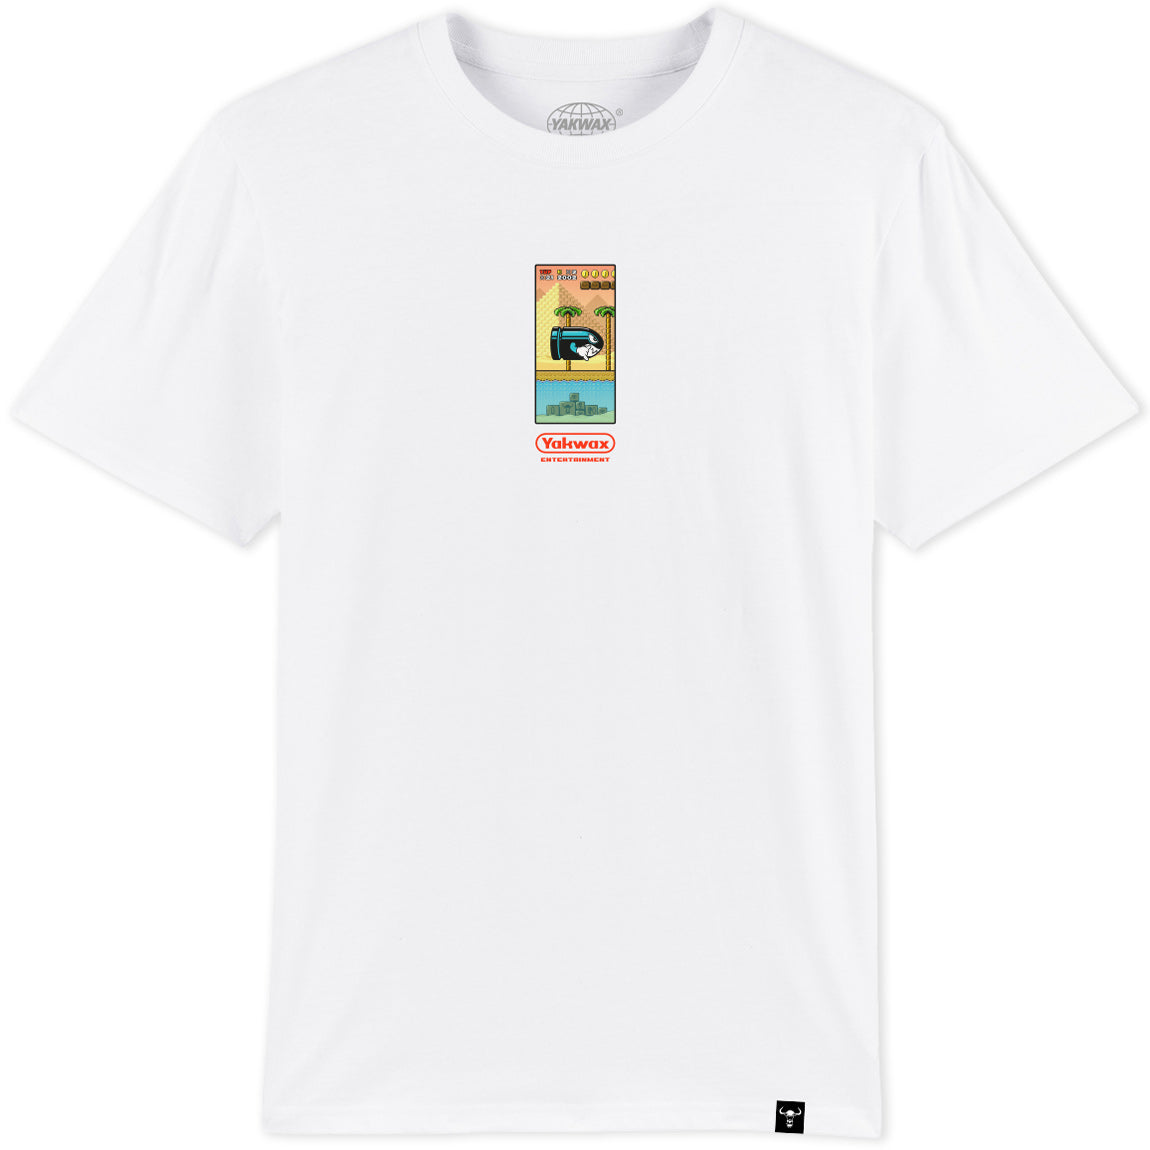 Yakwax Pyramid T-Shirt - White - Mens Graphic T-Shirt by Yakwax